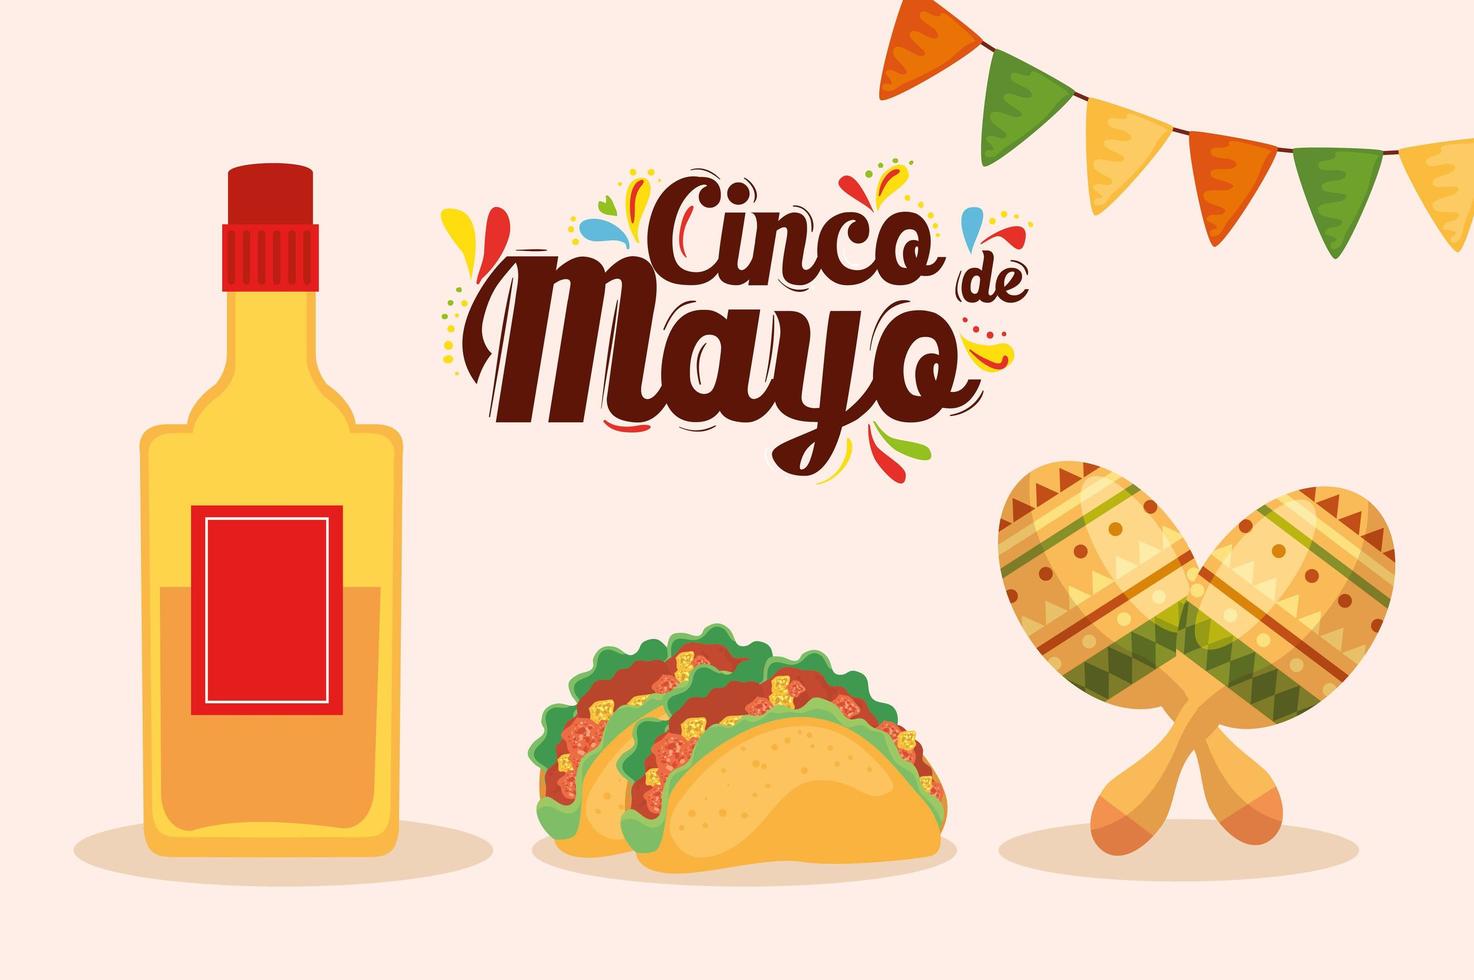 bottiglia di tequila messicana tacos e maracas di disegno vettoriale cinco de mayo